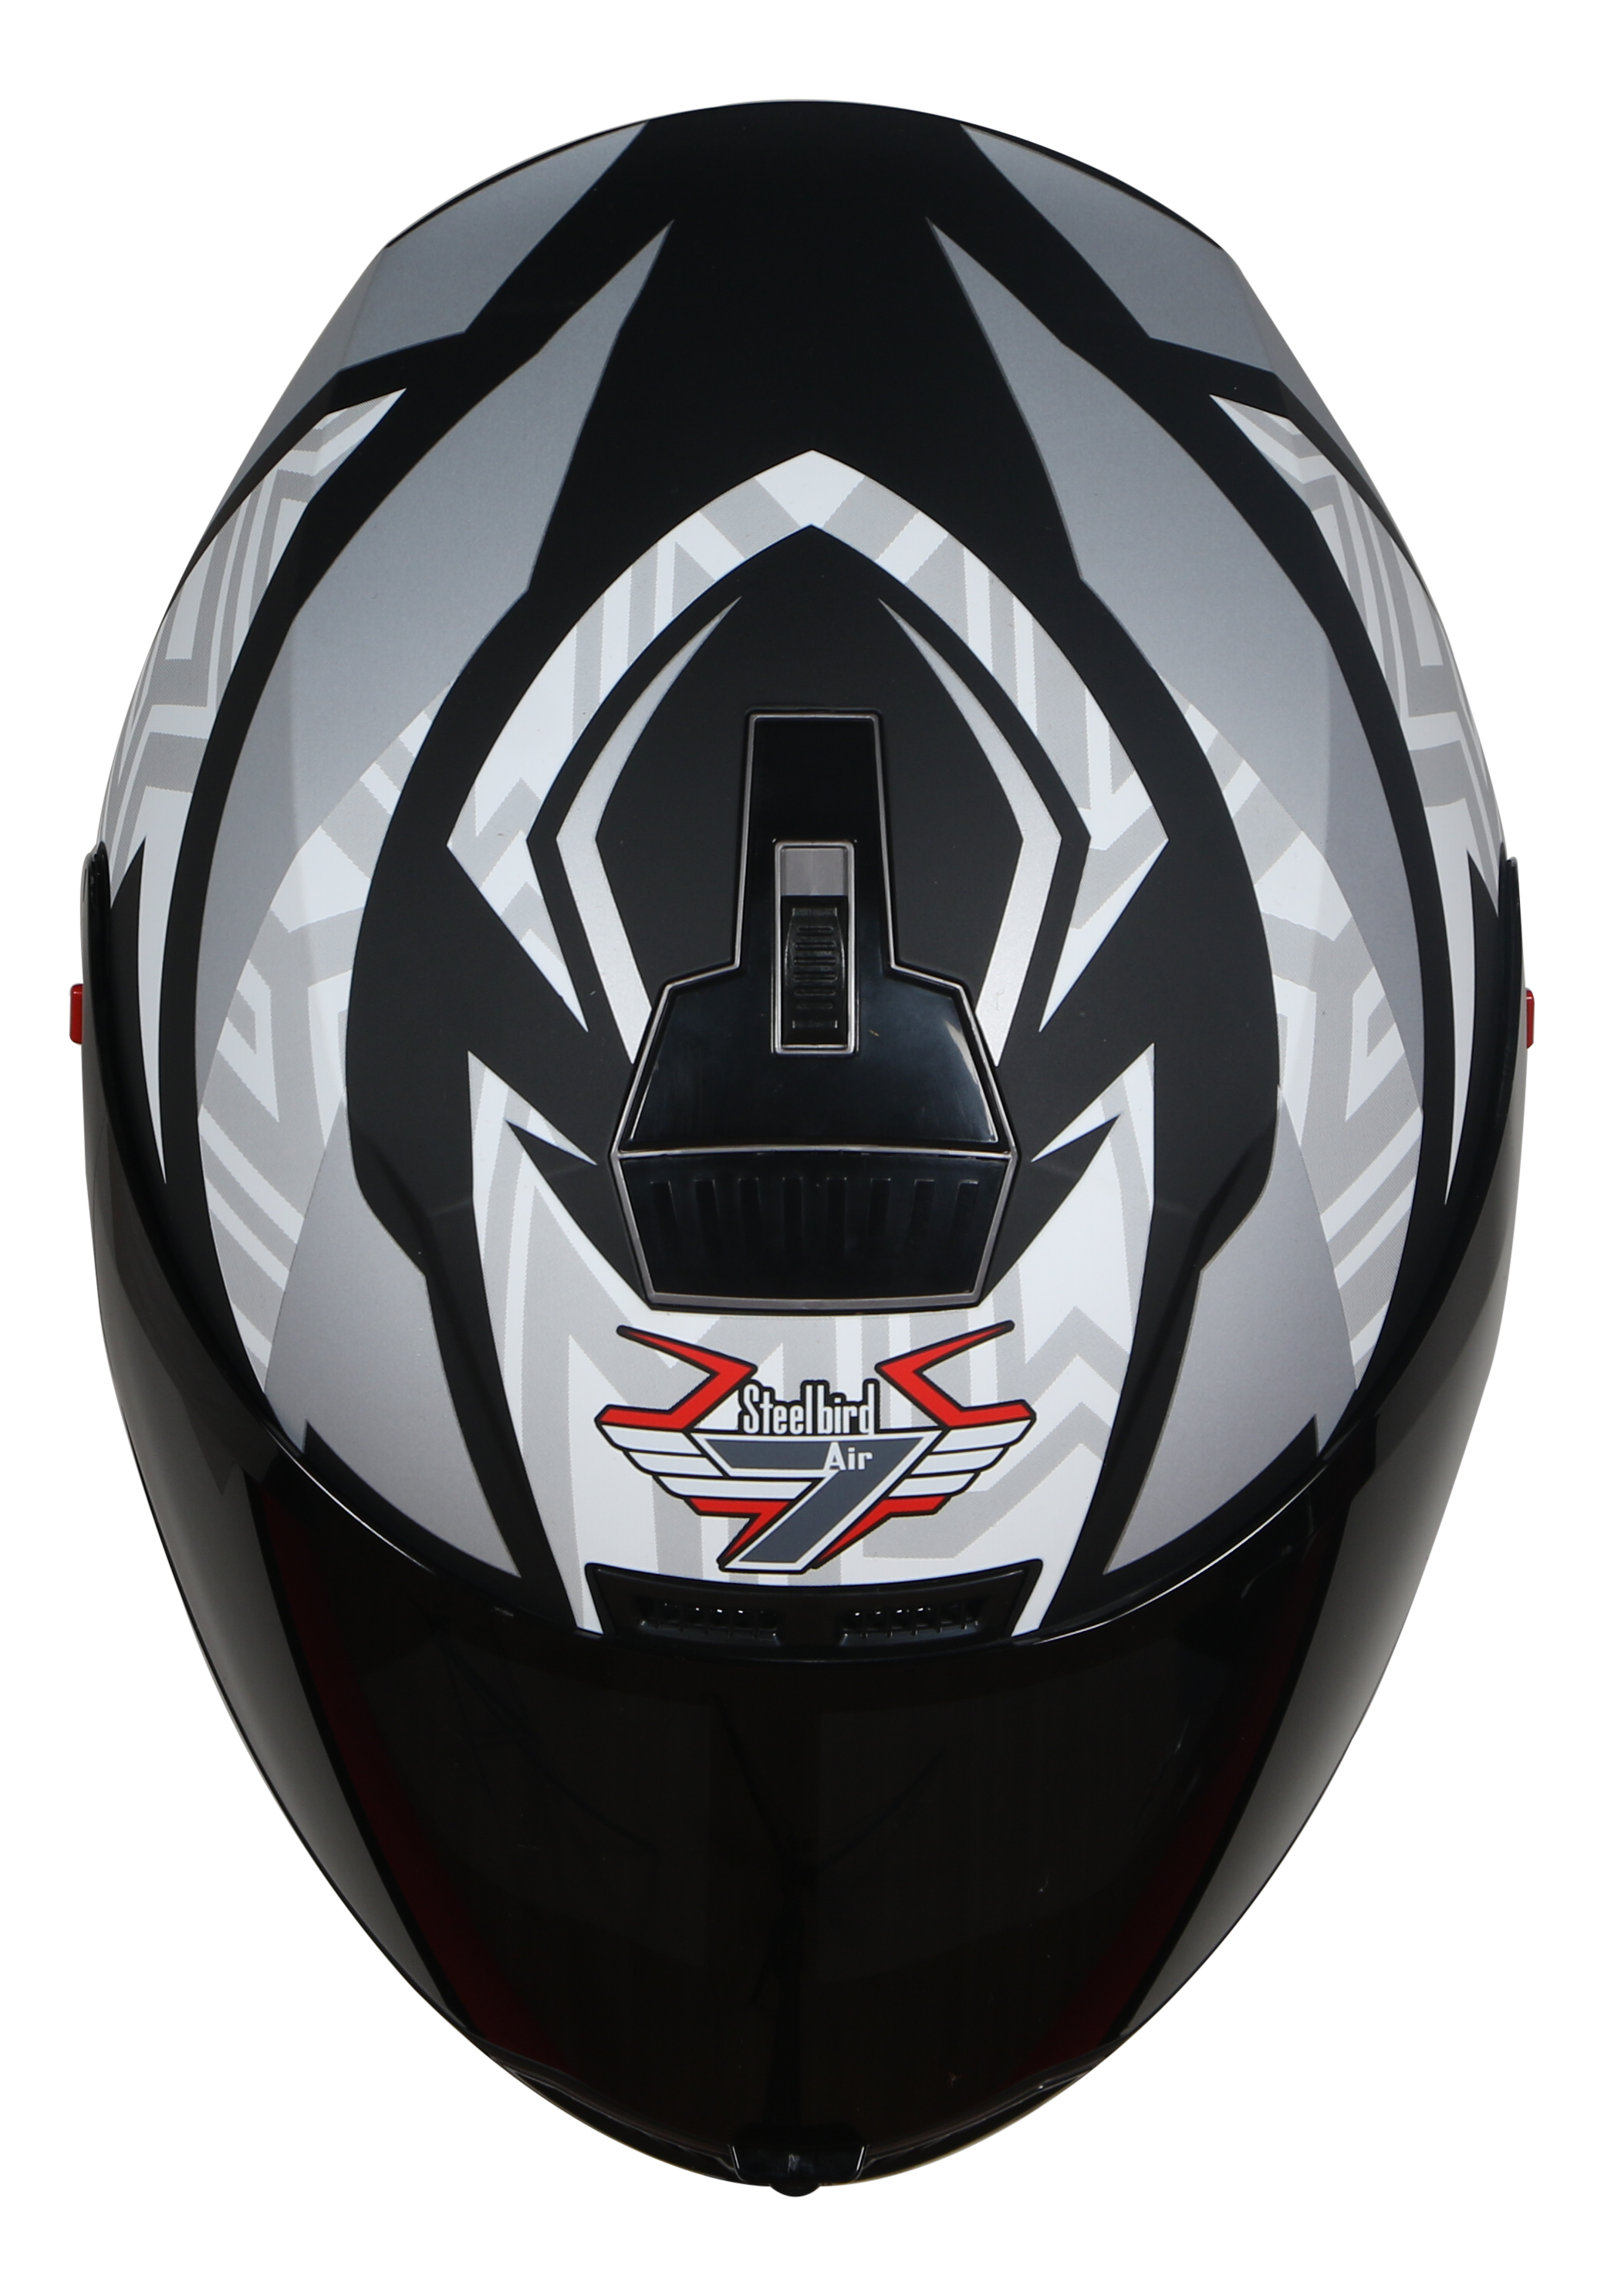 Steelbird SBA-1 Cesar ISI Certified Full Face Graphic Helmet (Matt Black White With Smoke Visor)